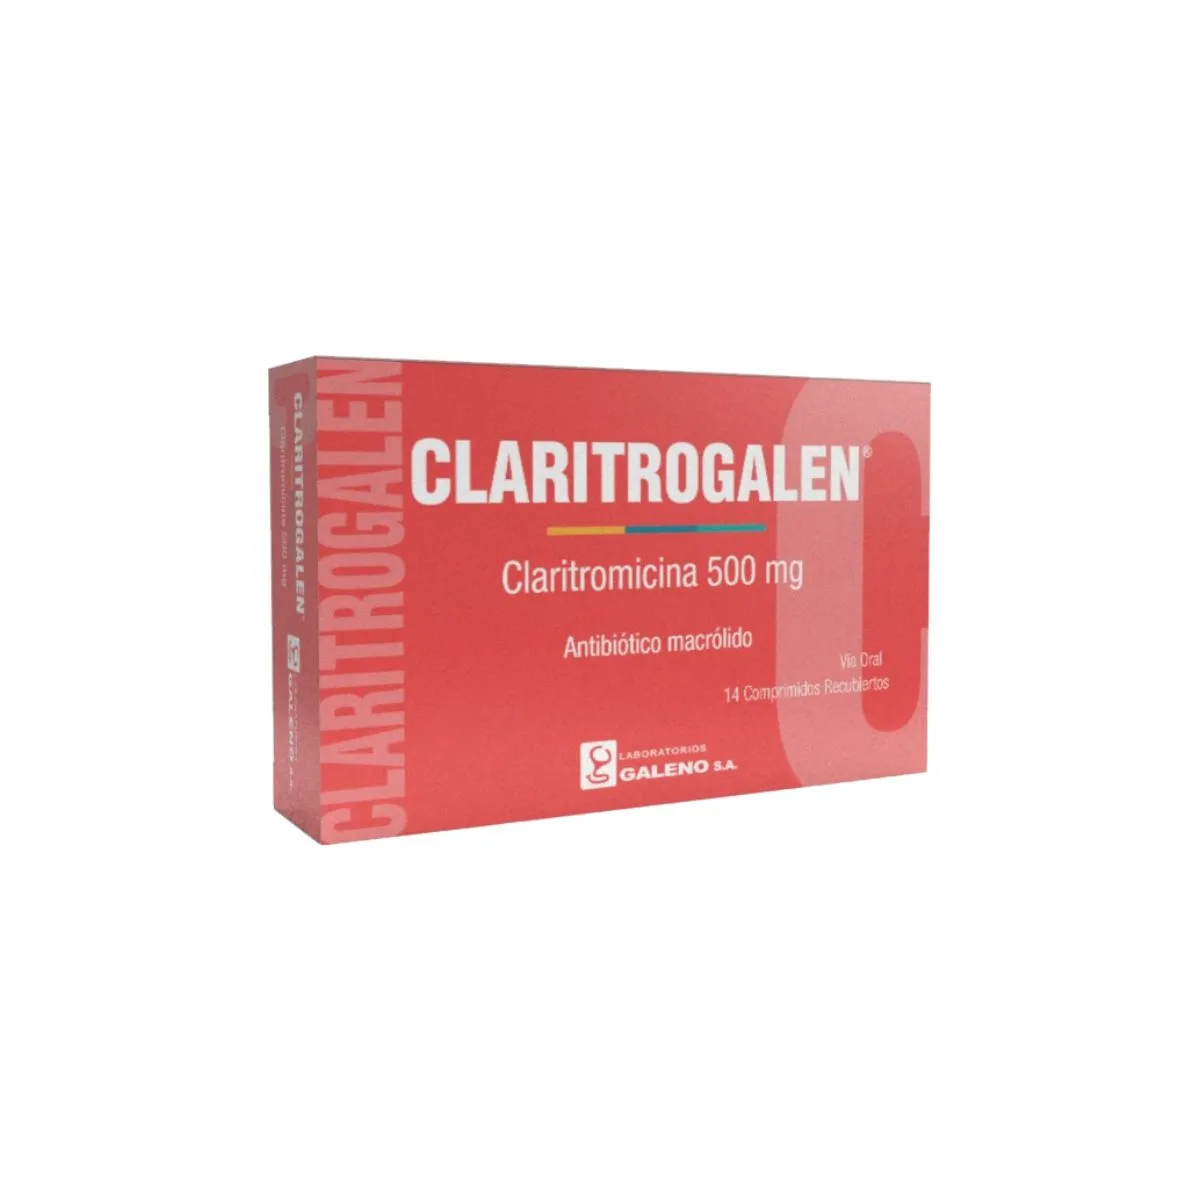 Claritrogalen Claritromicina 500 mg - Cont. 14 Comprimidos